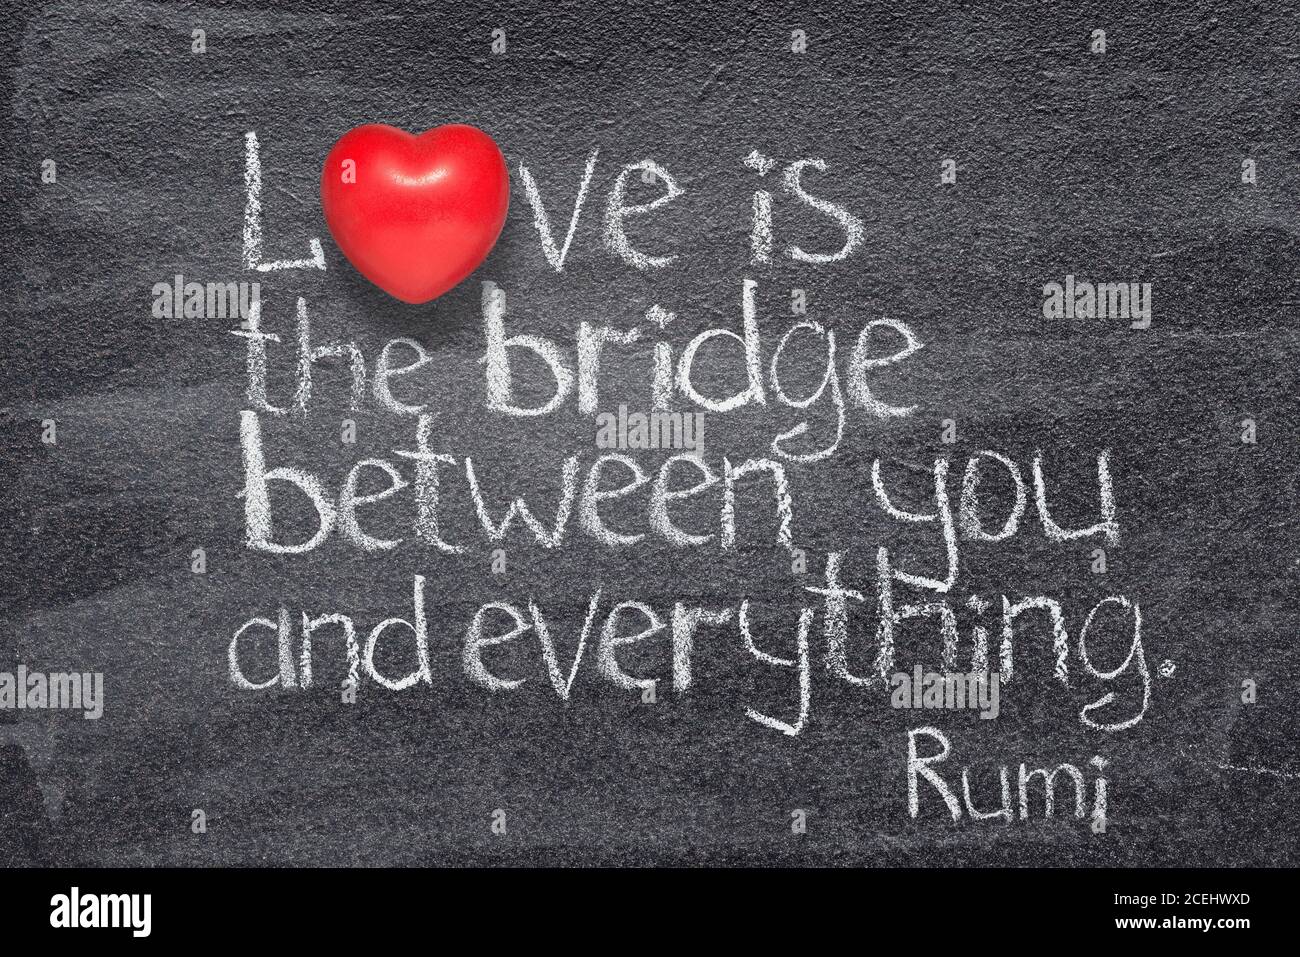 Liebe ist die Brücke zwischen dir und allem - uralt Persischer Dichter und Philosoph Rumi Zitat geschrieben auf Tafel mit Rotes Herz Symbol statt Stockfoto